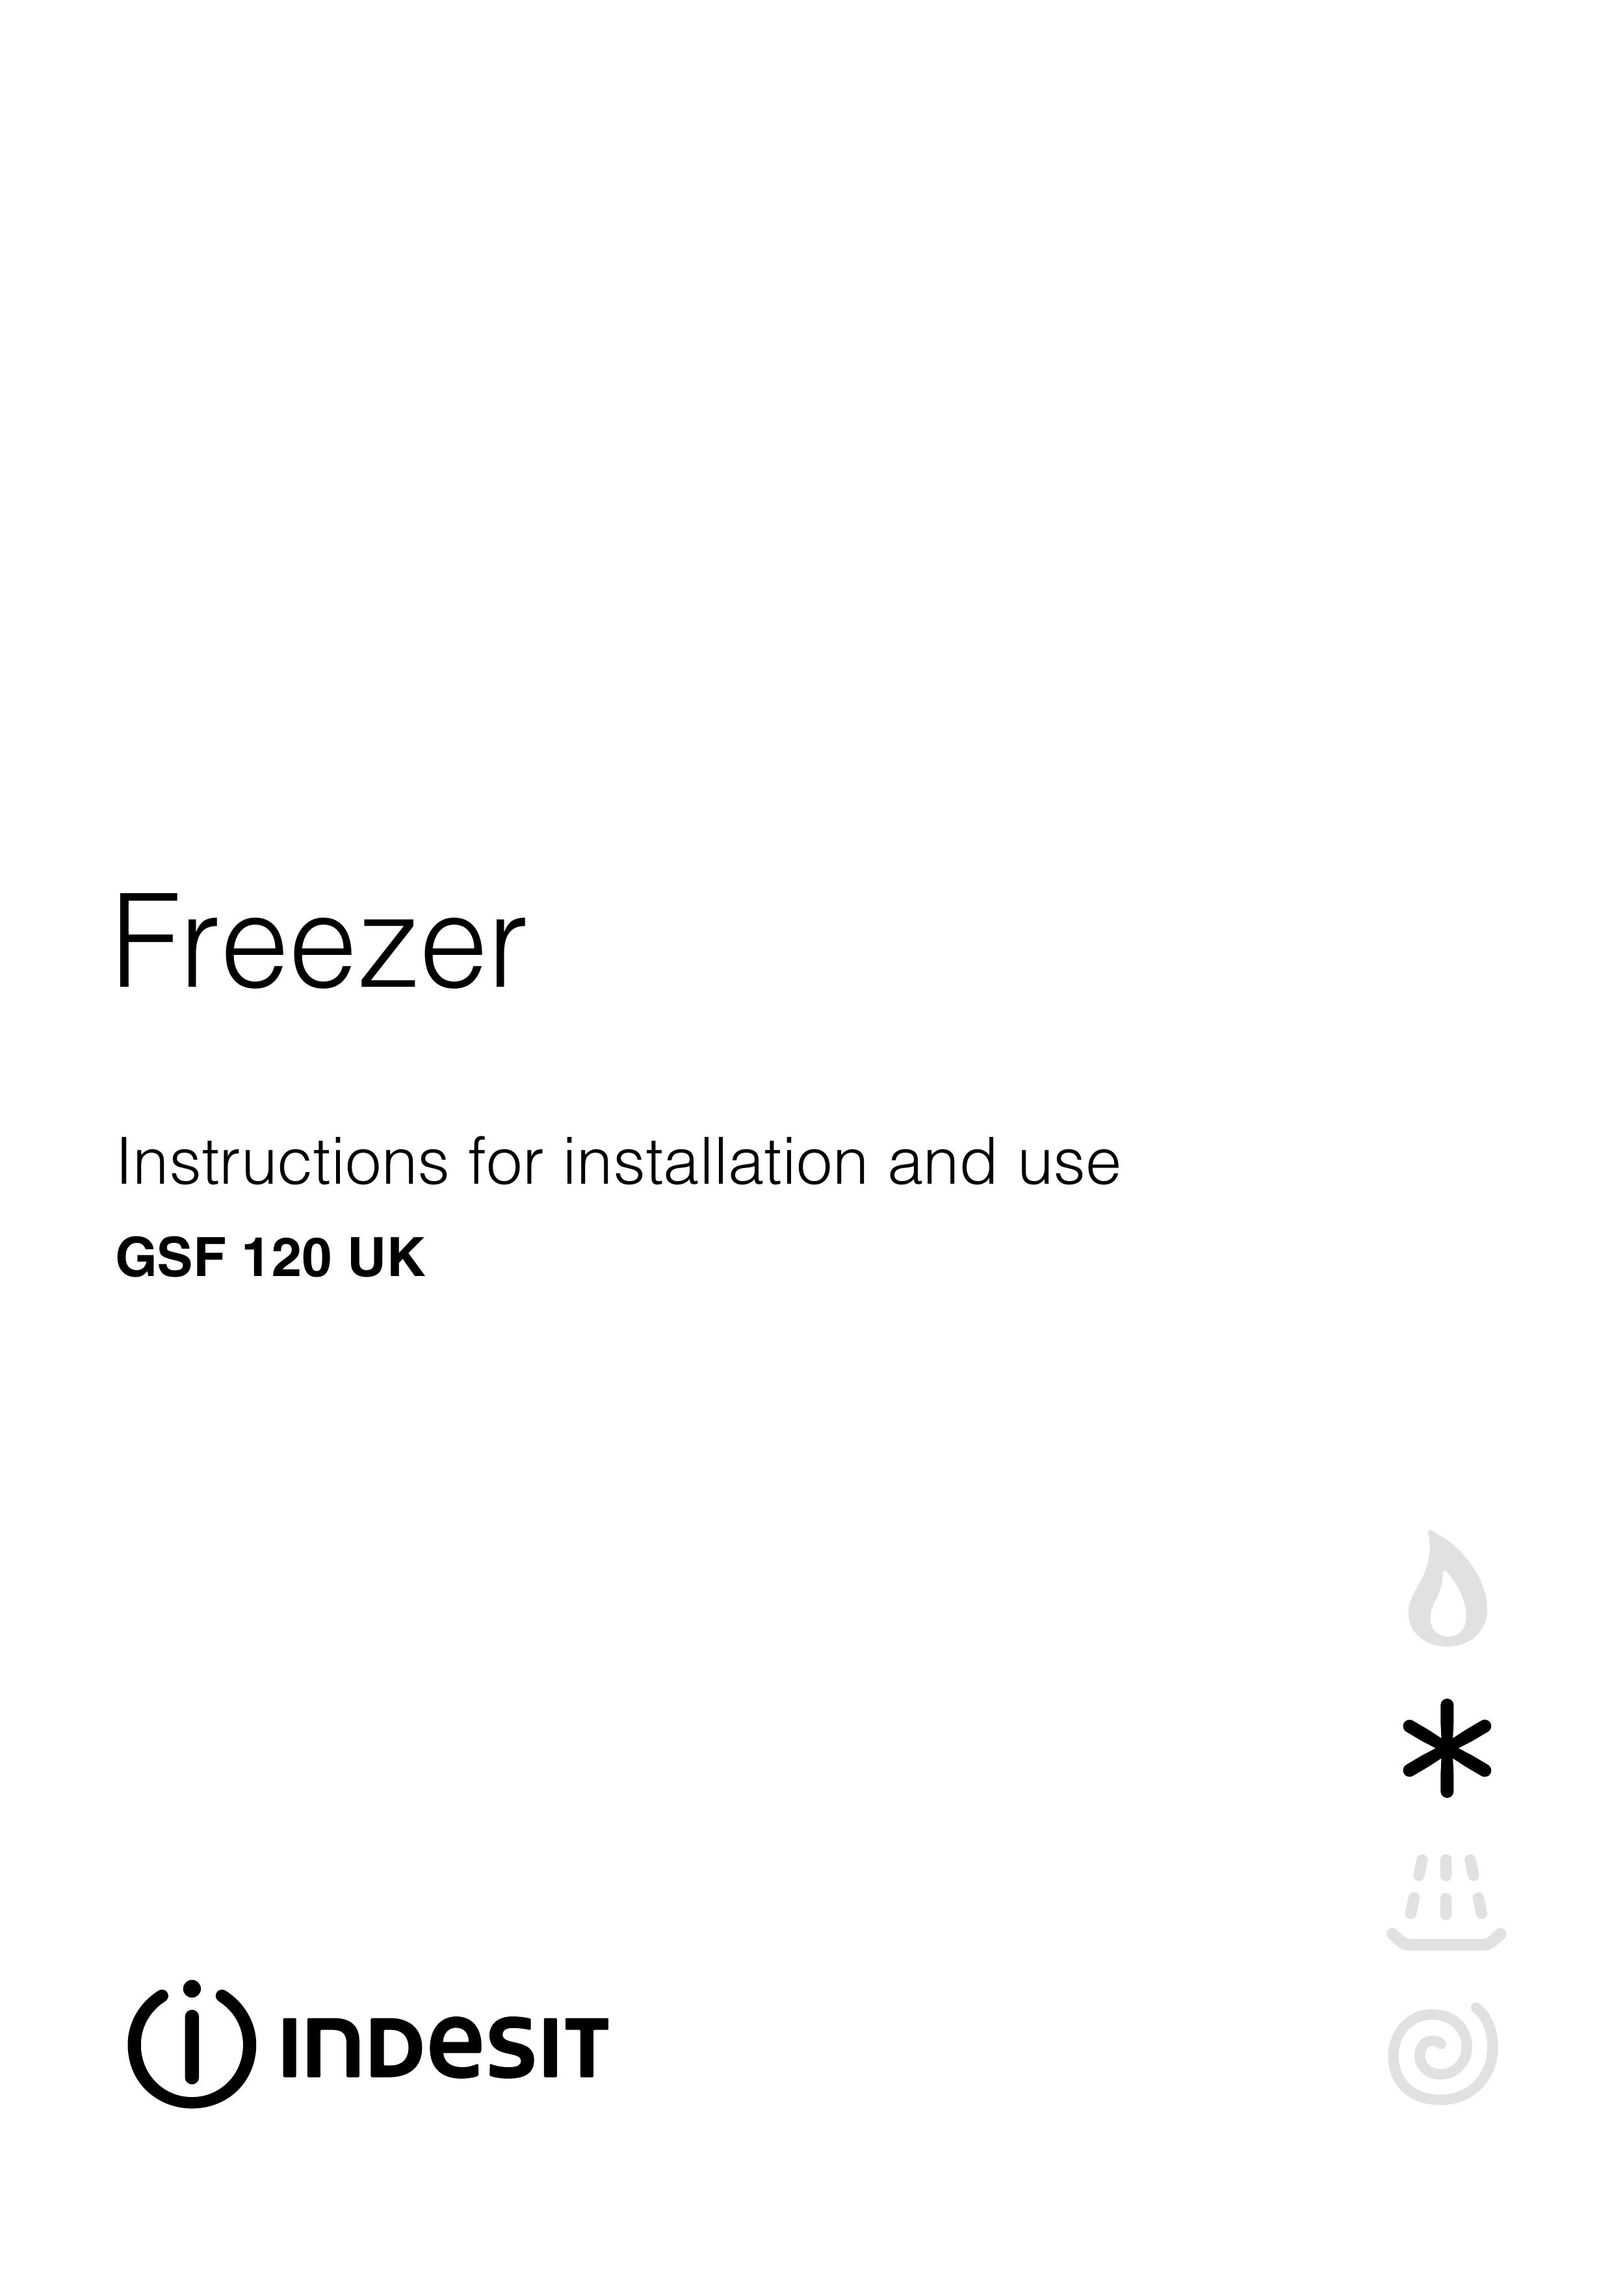 Indesit GSF 120 UK Freezer User Manual